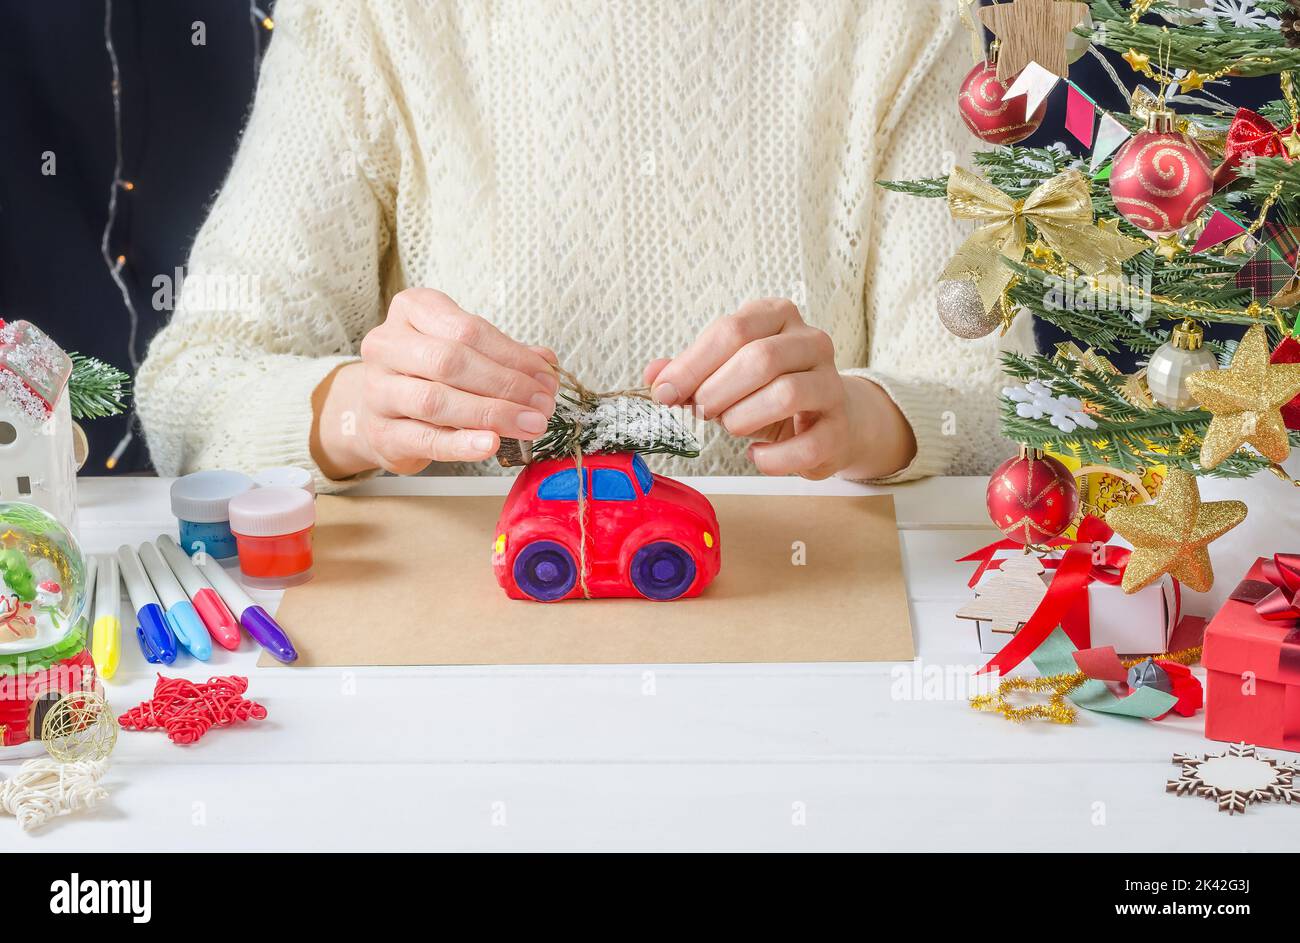 Schritt-für-Schritt Foto-Anleitung für Weihnachten Dekor - ein Mädchen malt eine Gipsmaschine, Schritt 7 - binden Sie einen Weihnachtsbaum auf das Dach Stockfoto